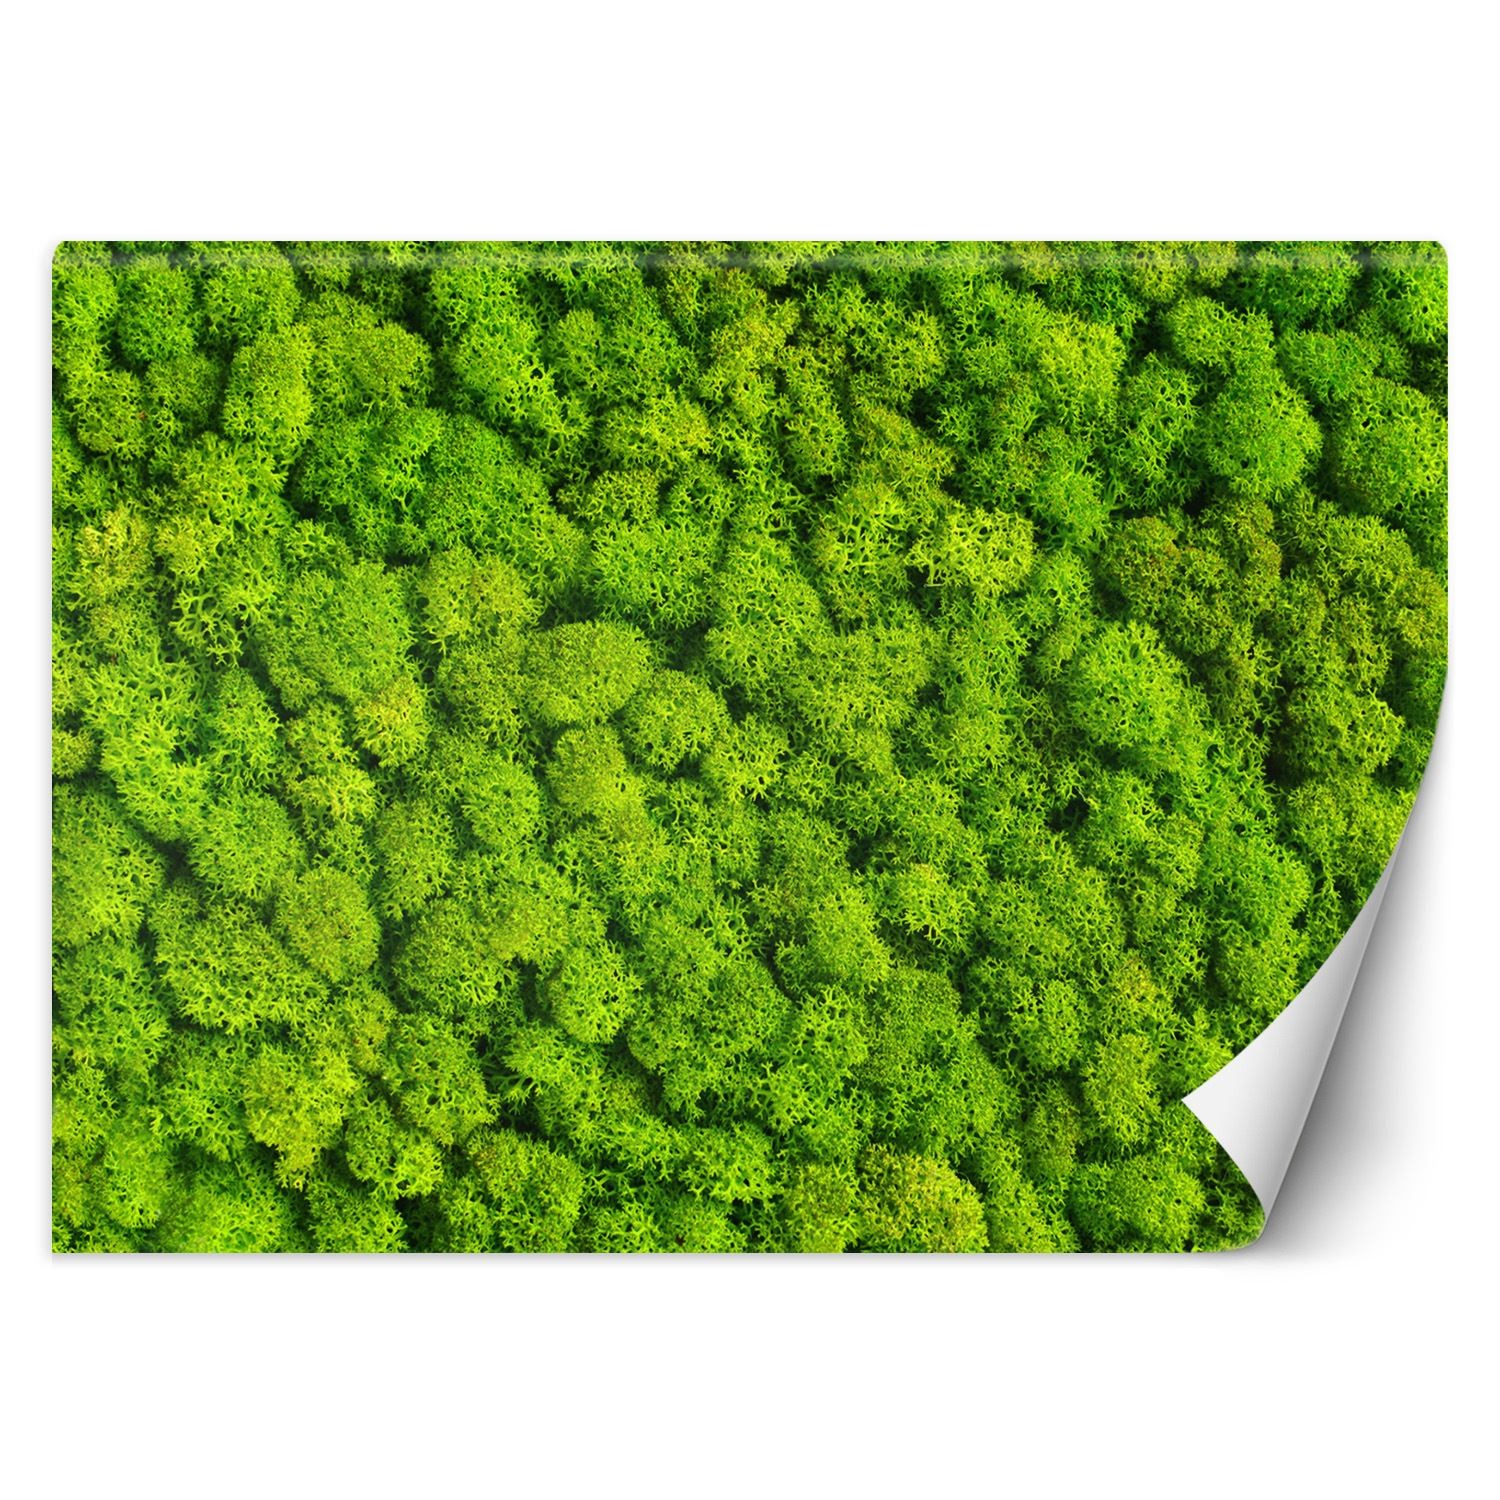 Trend24 – Behang – Weevil Moss – Vliesbehang – Behang Woonkamer – Fotobehang – 400x280x2 cm – Incl. behanglijm